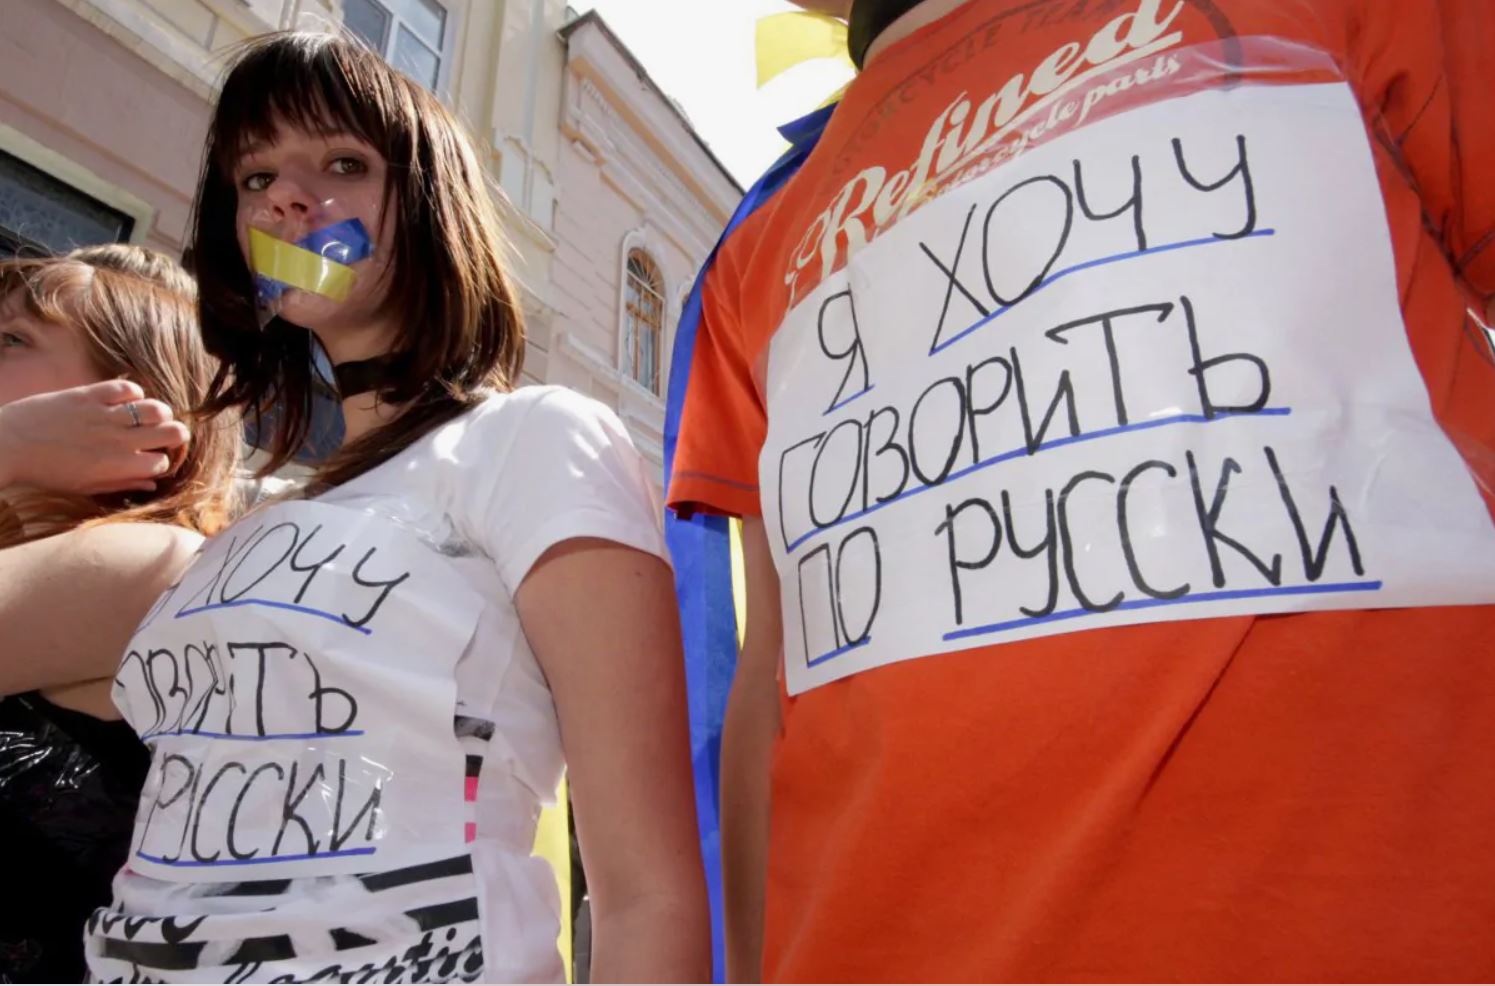 Protesti v podporo ruskemu jeziku v Ukrajini